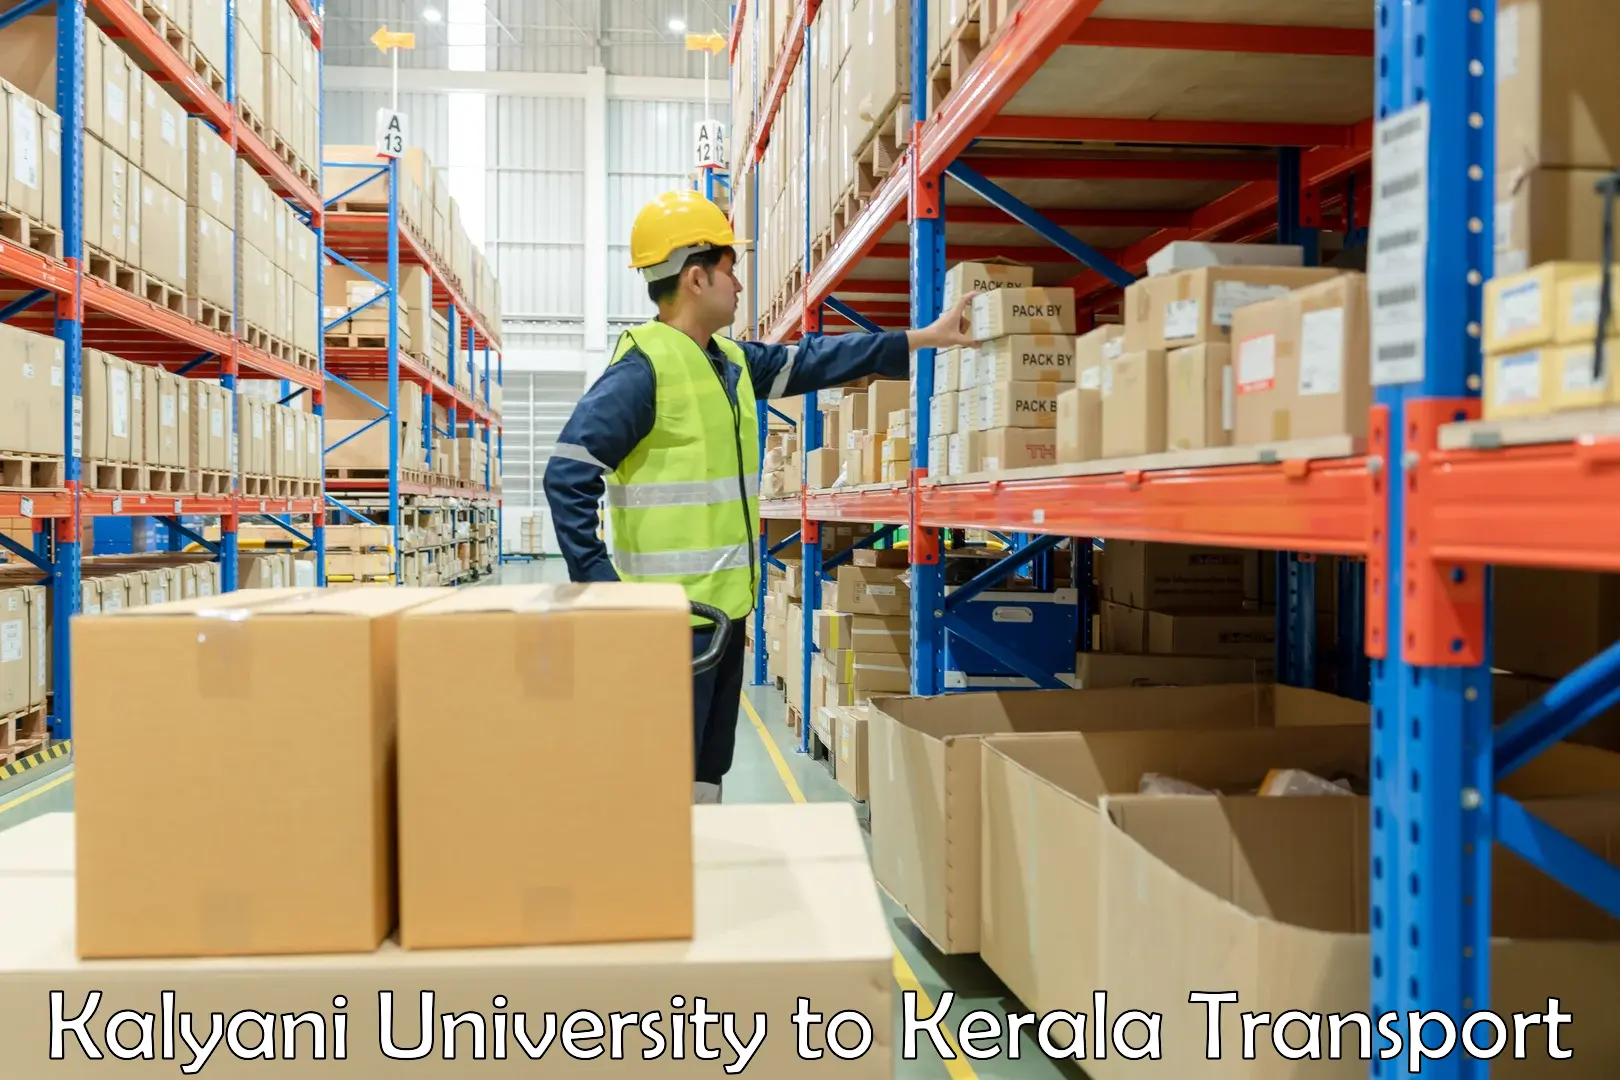 Transport in sharing Kalyani University to Kerala